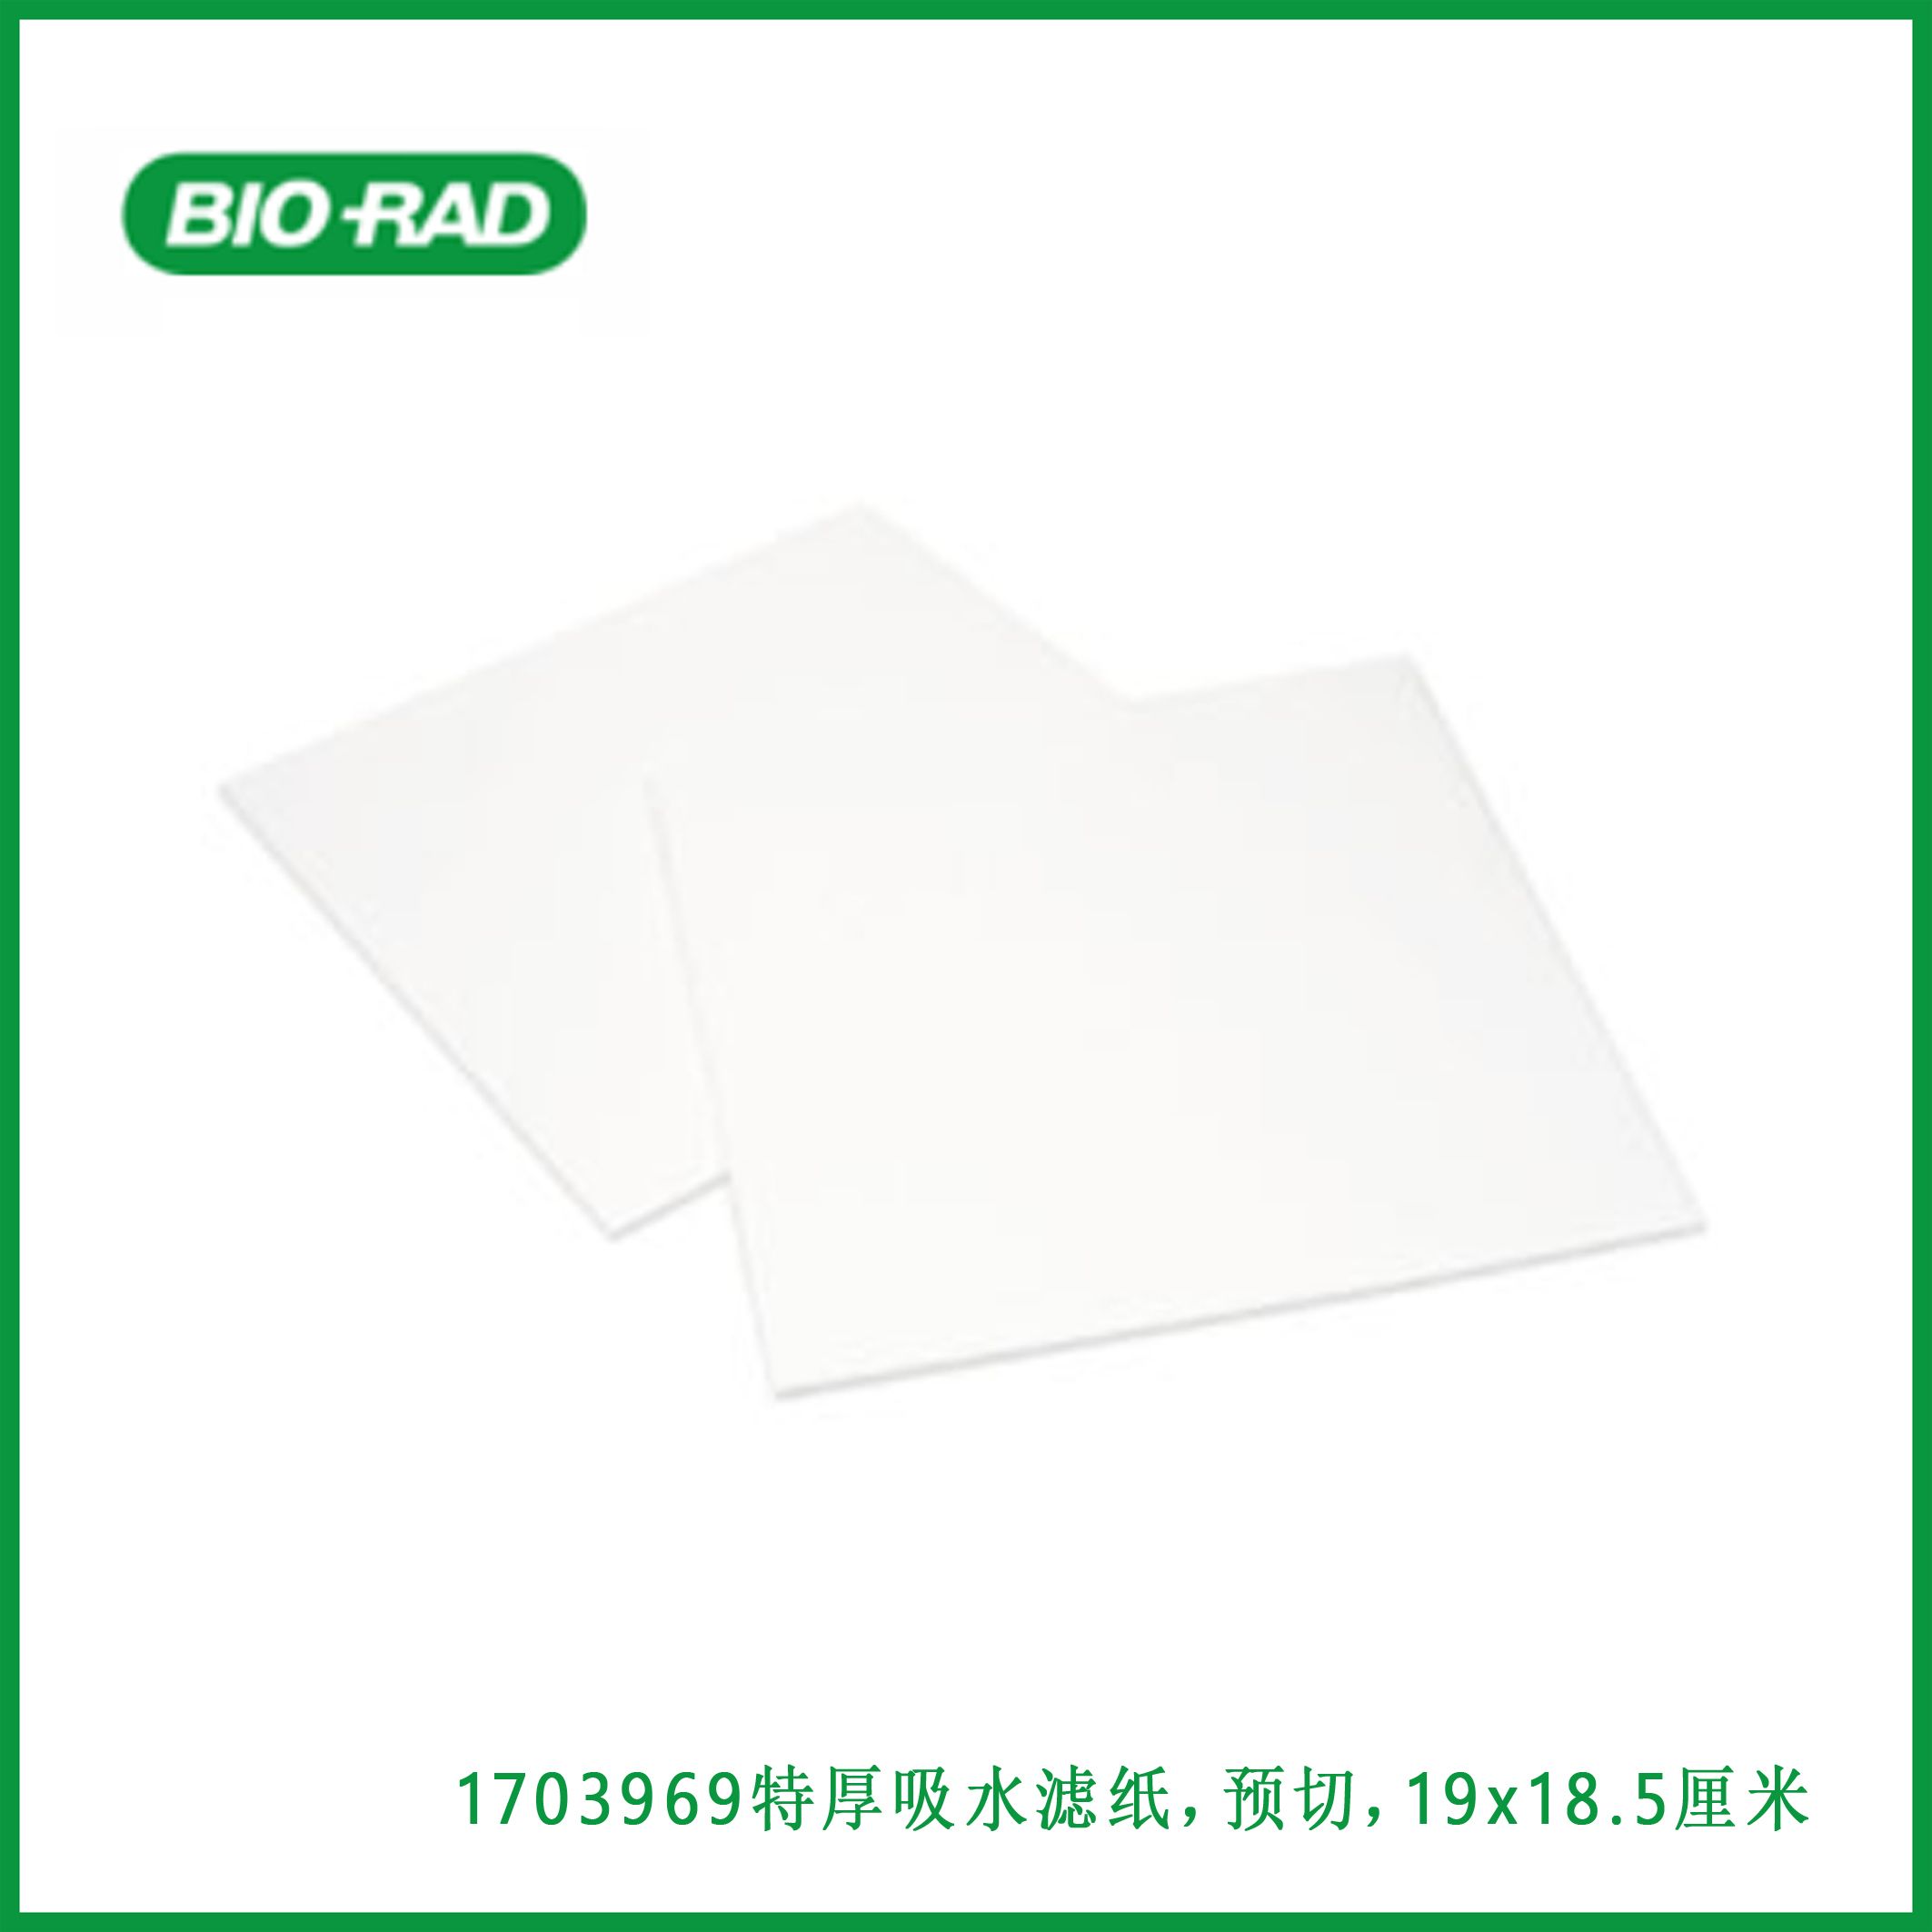 伯乐Bio-Rad1703969Extra Thick Blot Filter Paper, Precut, 19 x 18.5 cm，特厚吸水滤纸，预切，19 x 18.5厘米，现货